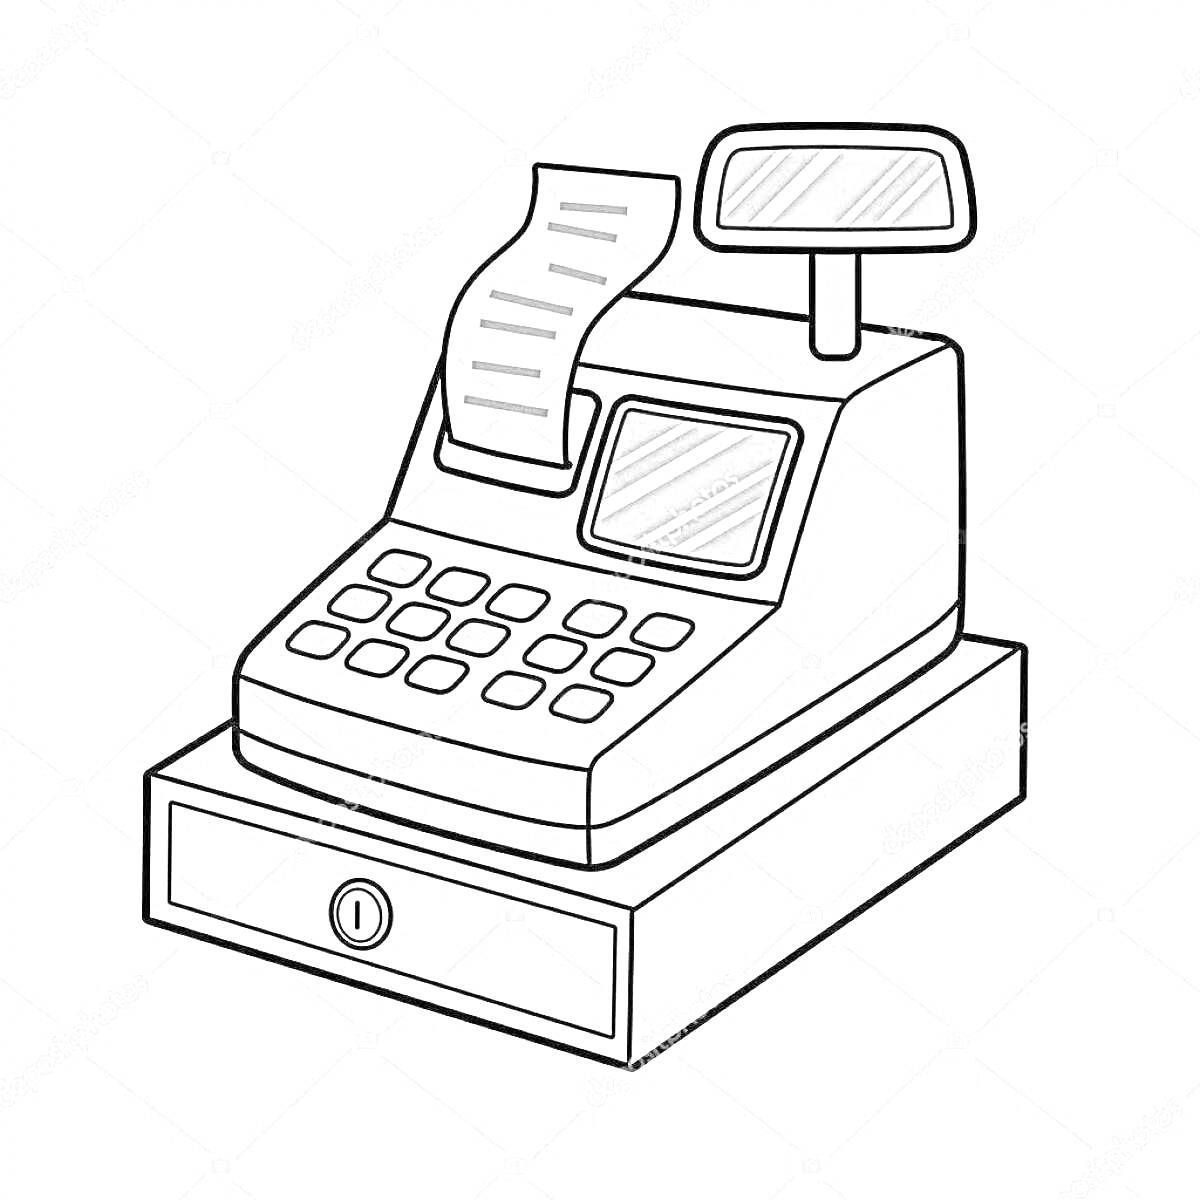 Раскраска Касса с клавиатурой, экраном, чеком и ящиком для денег